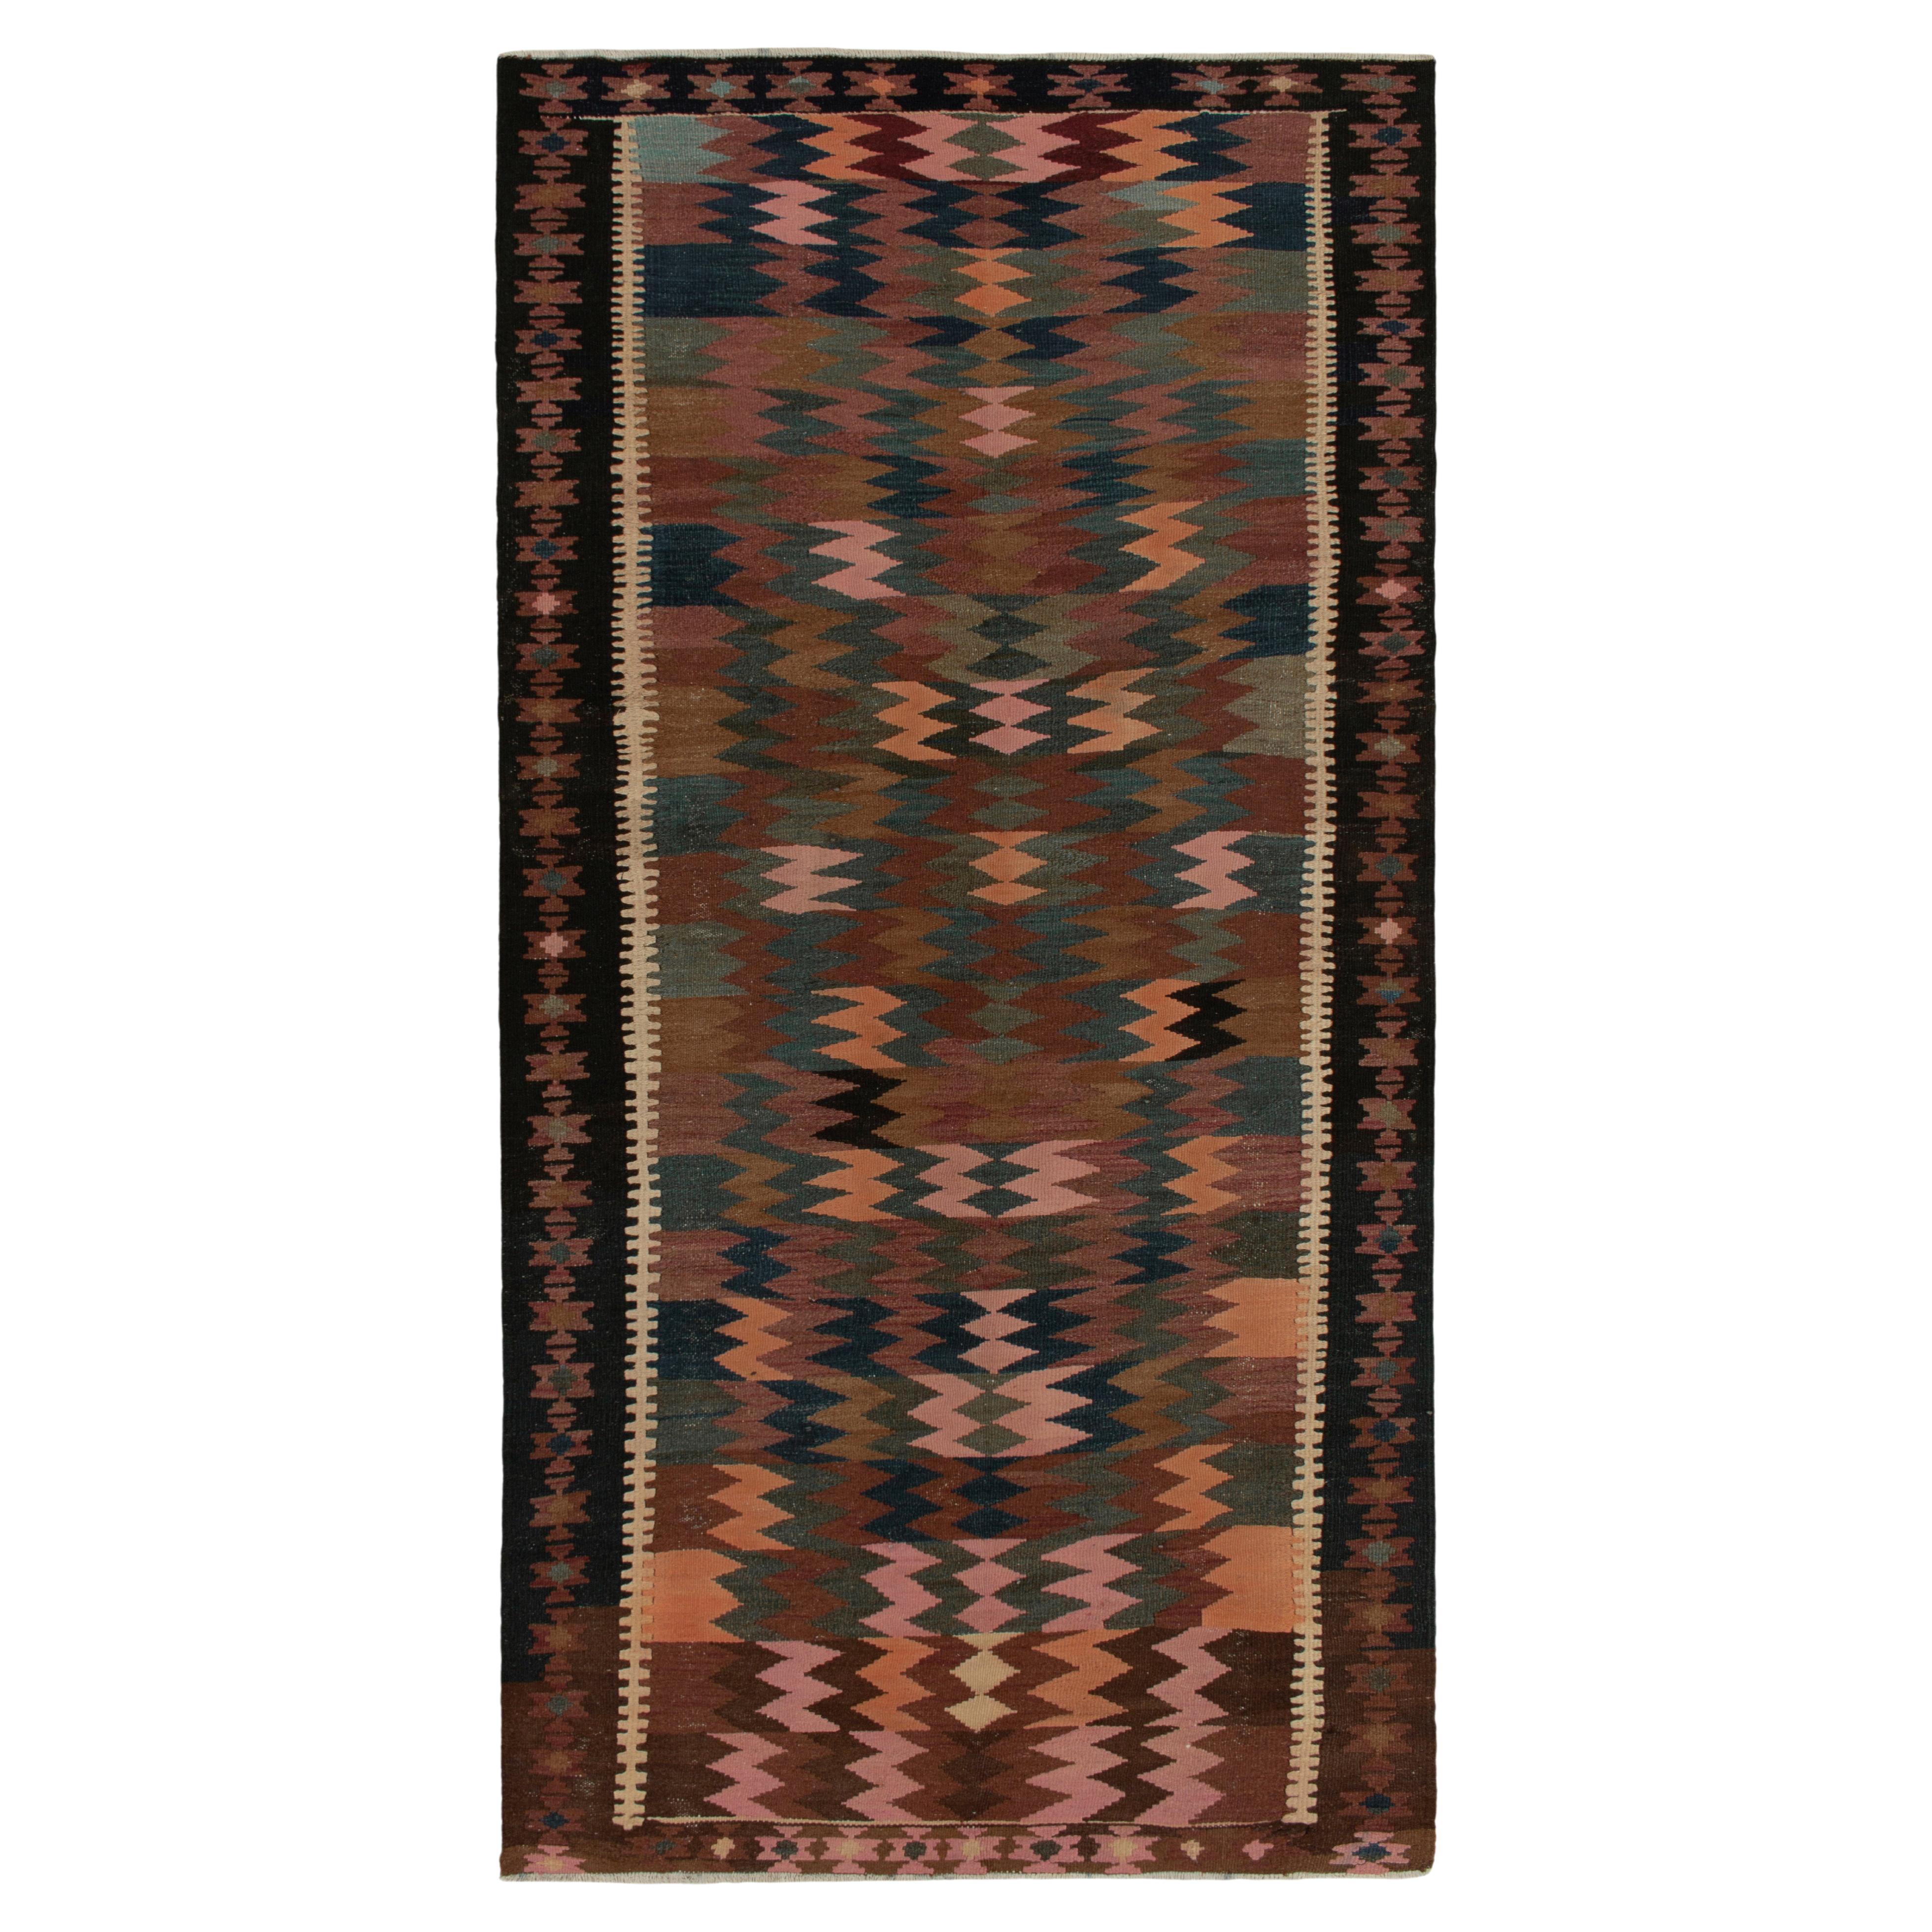 Vintage Persian Kilim Rug in Beige-Brown Tribal Geometric Pattern by Rug & Kilim For Sale